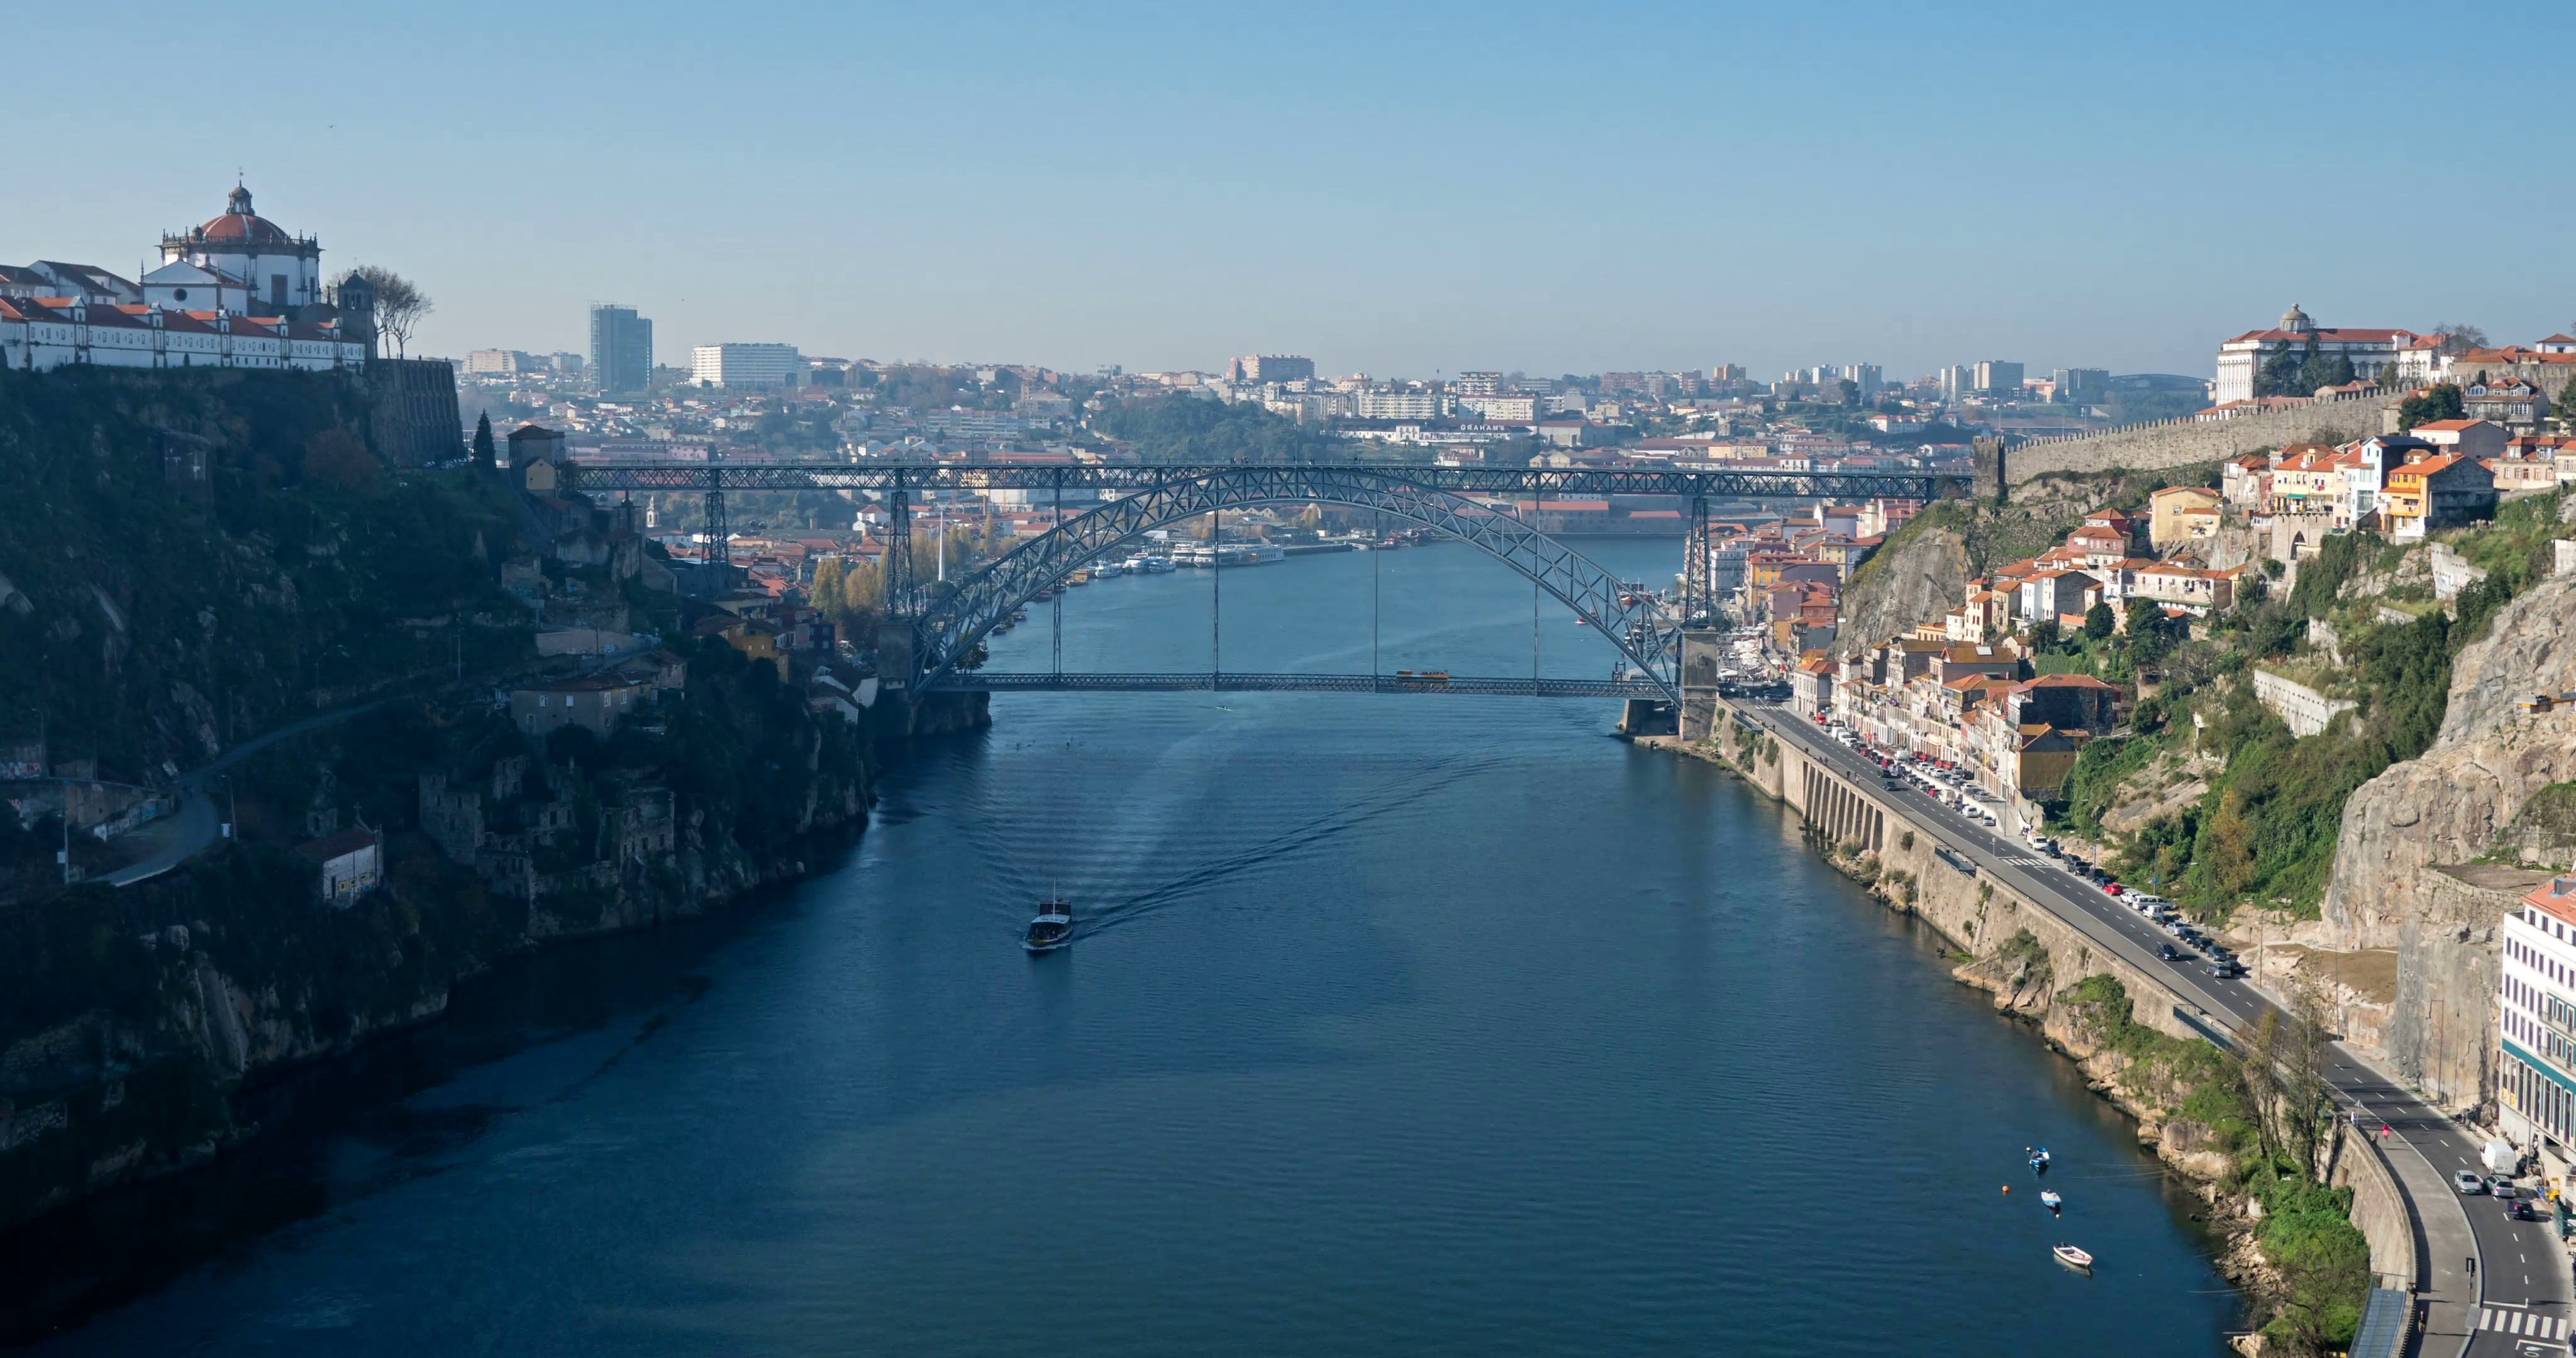 Arrabida bridge and river traffic, Douro river, Porto, Portugal ...